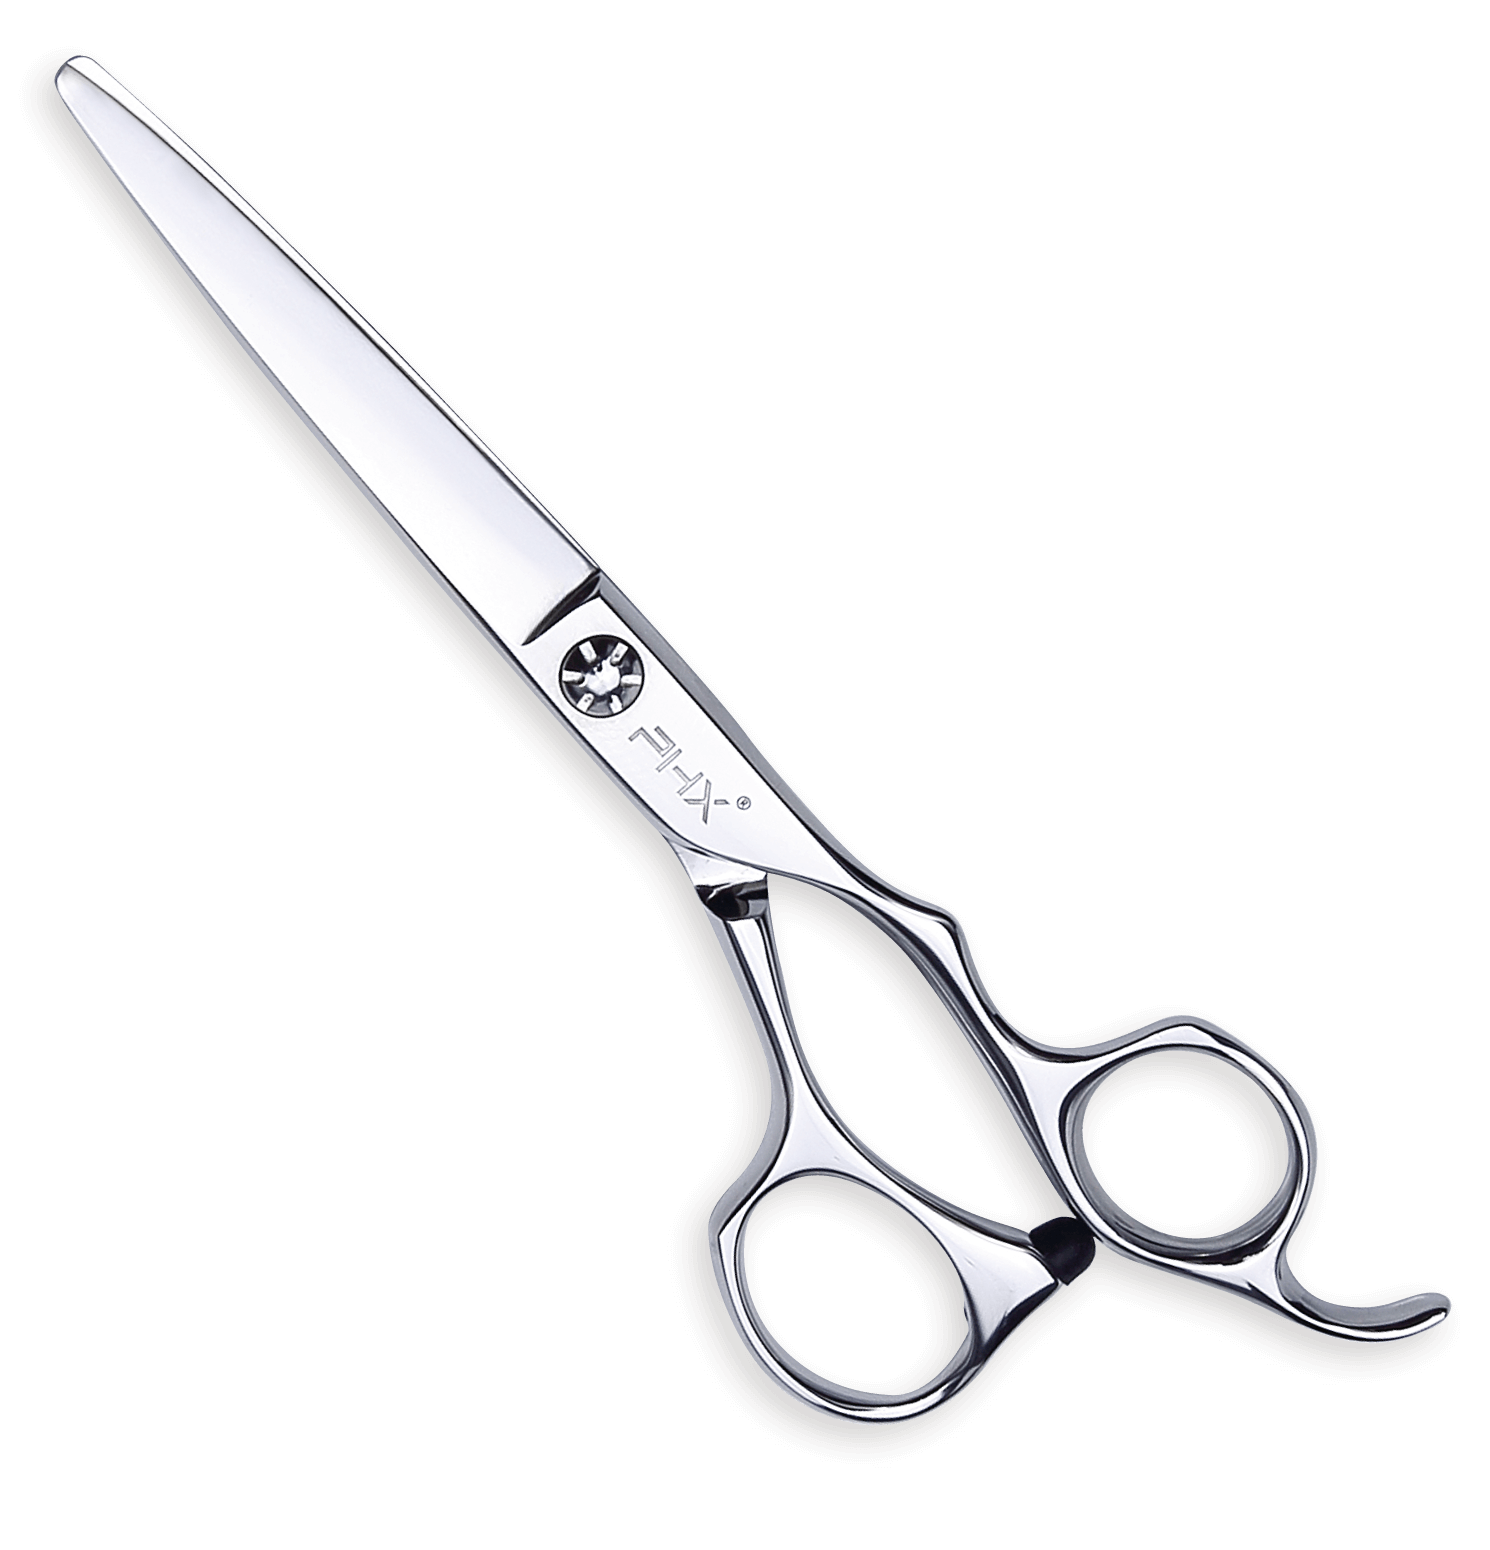 PHX Cut scissors A8